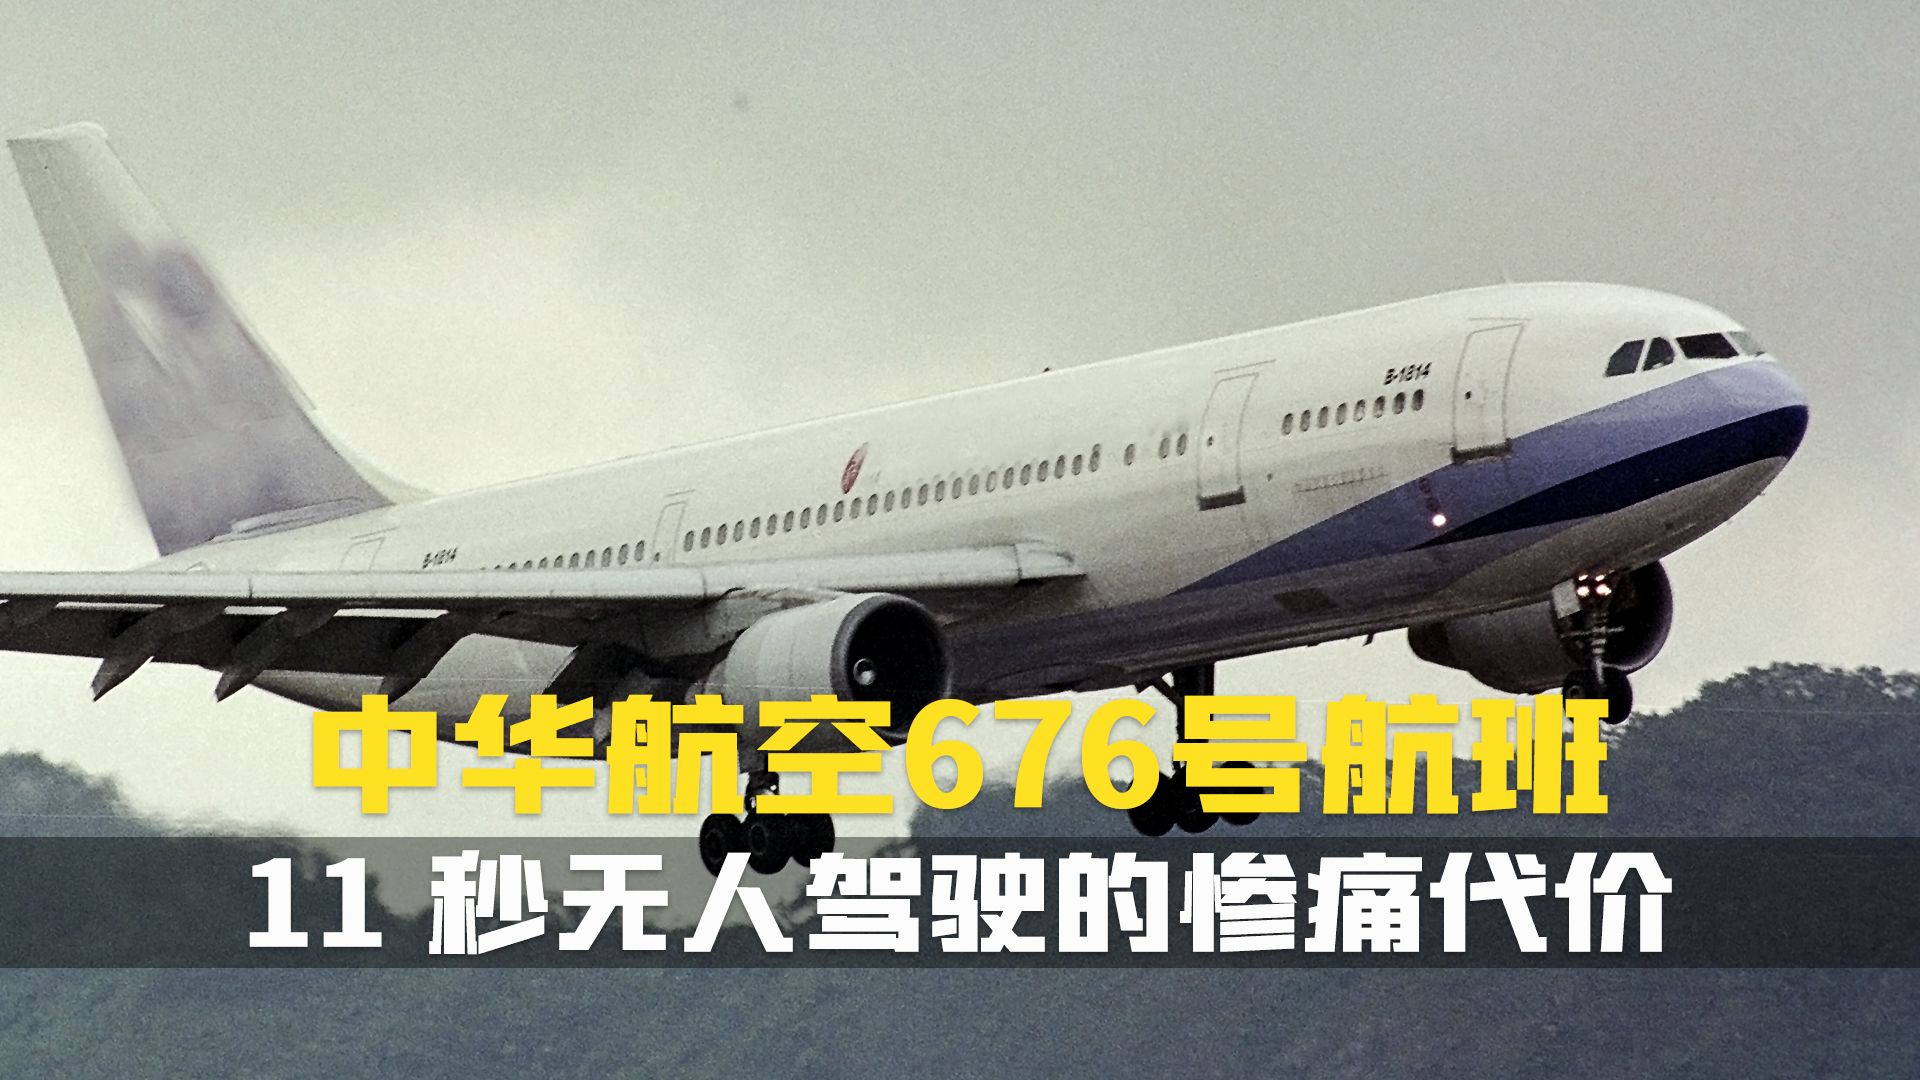 中华航空006空难图片